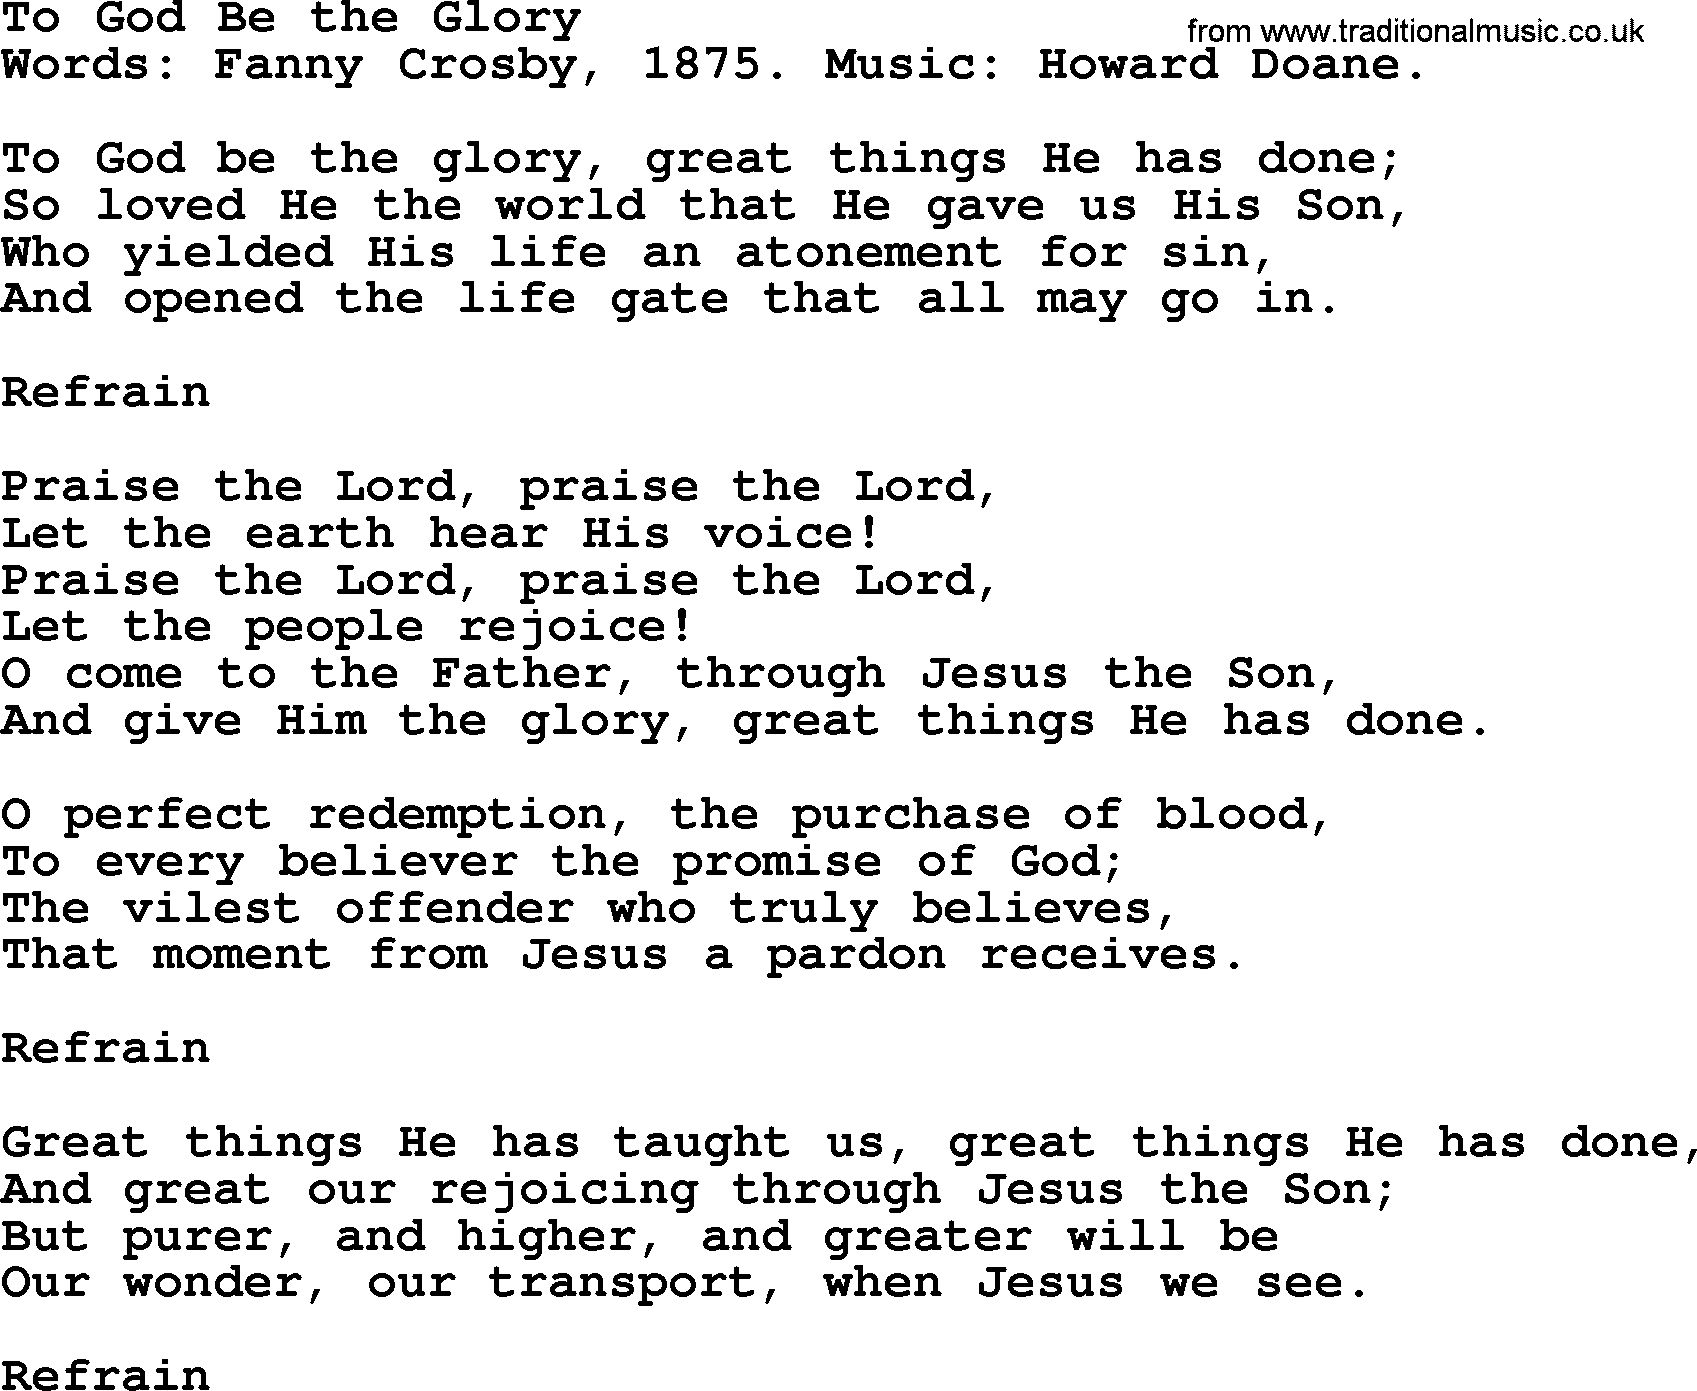 Fanny Crosby song: To God Be The Glory, lyrics